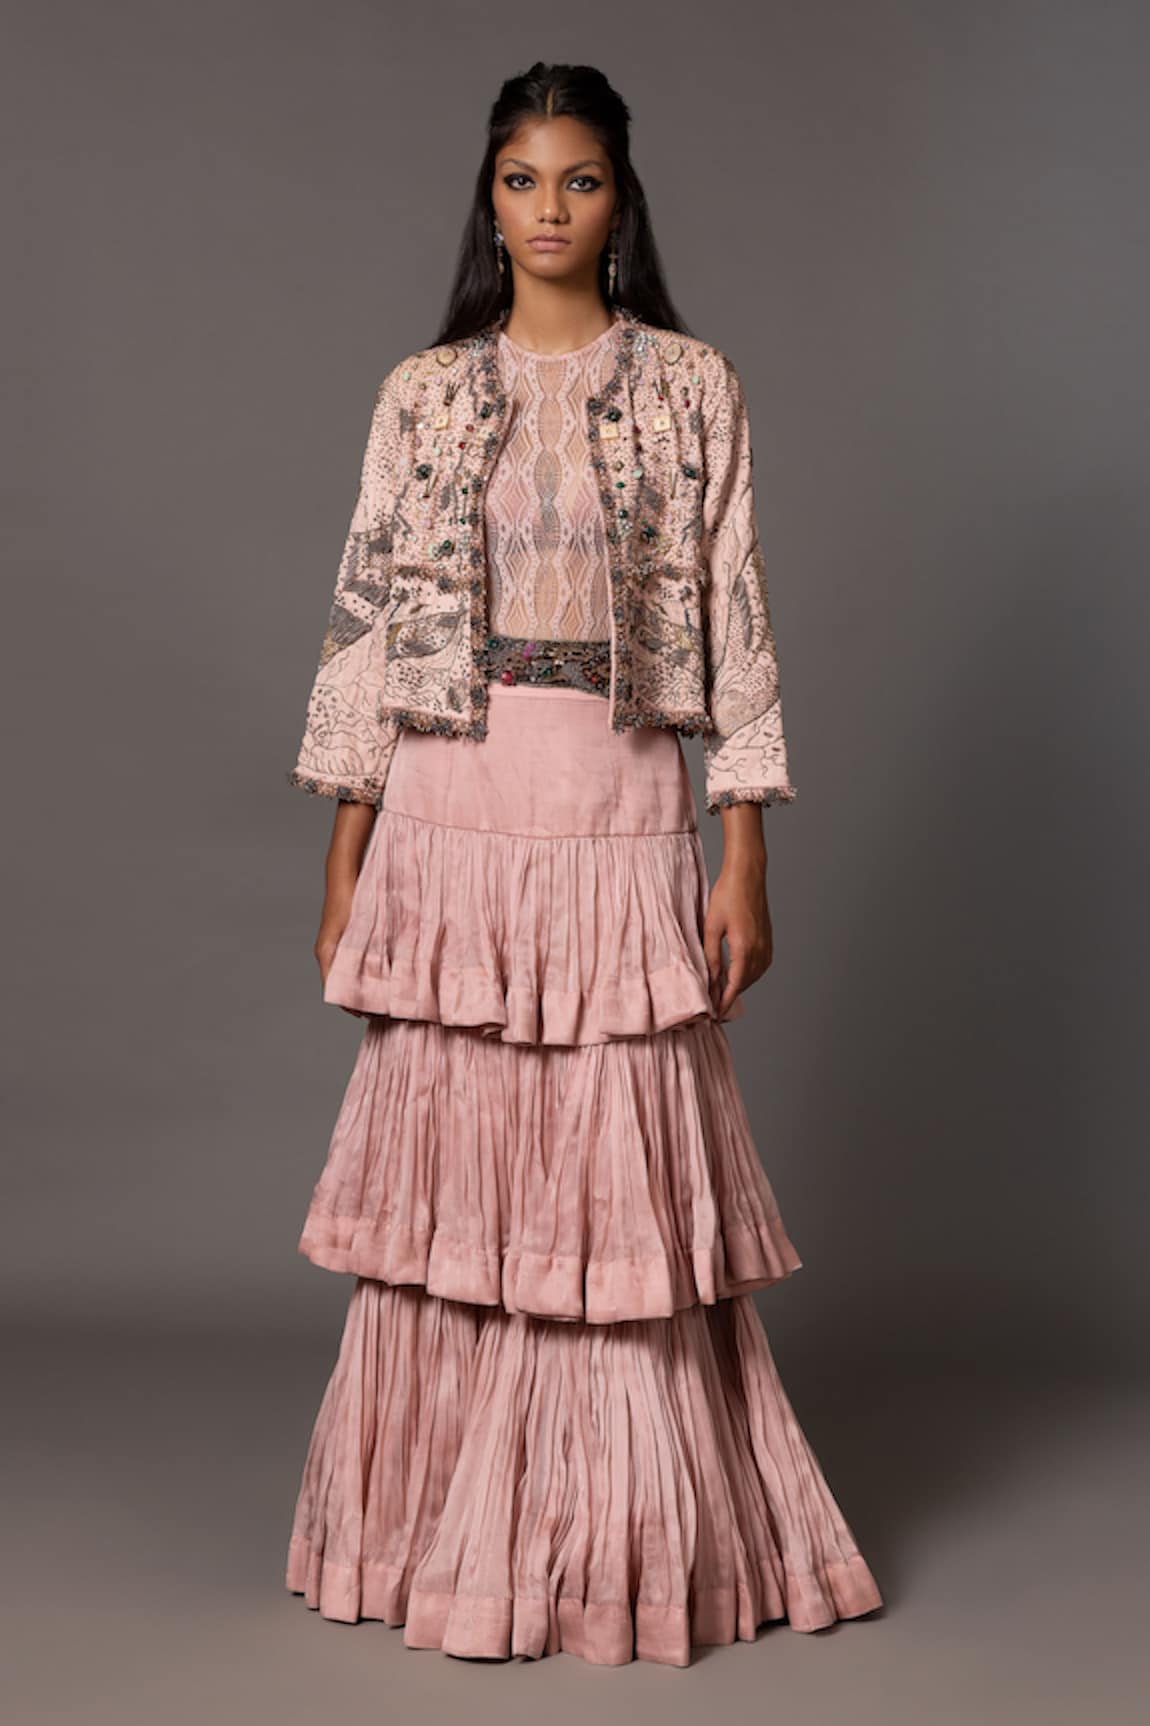 A Humming Way Sang-e-Sitara Crystal Embroidered Jacket Tiered Skirt Set